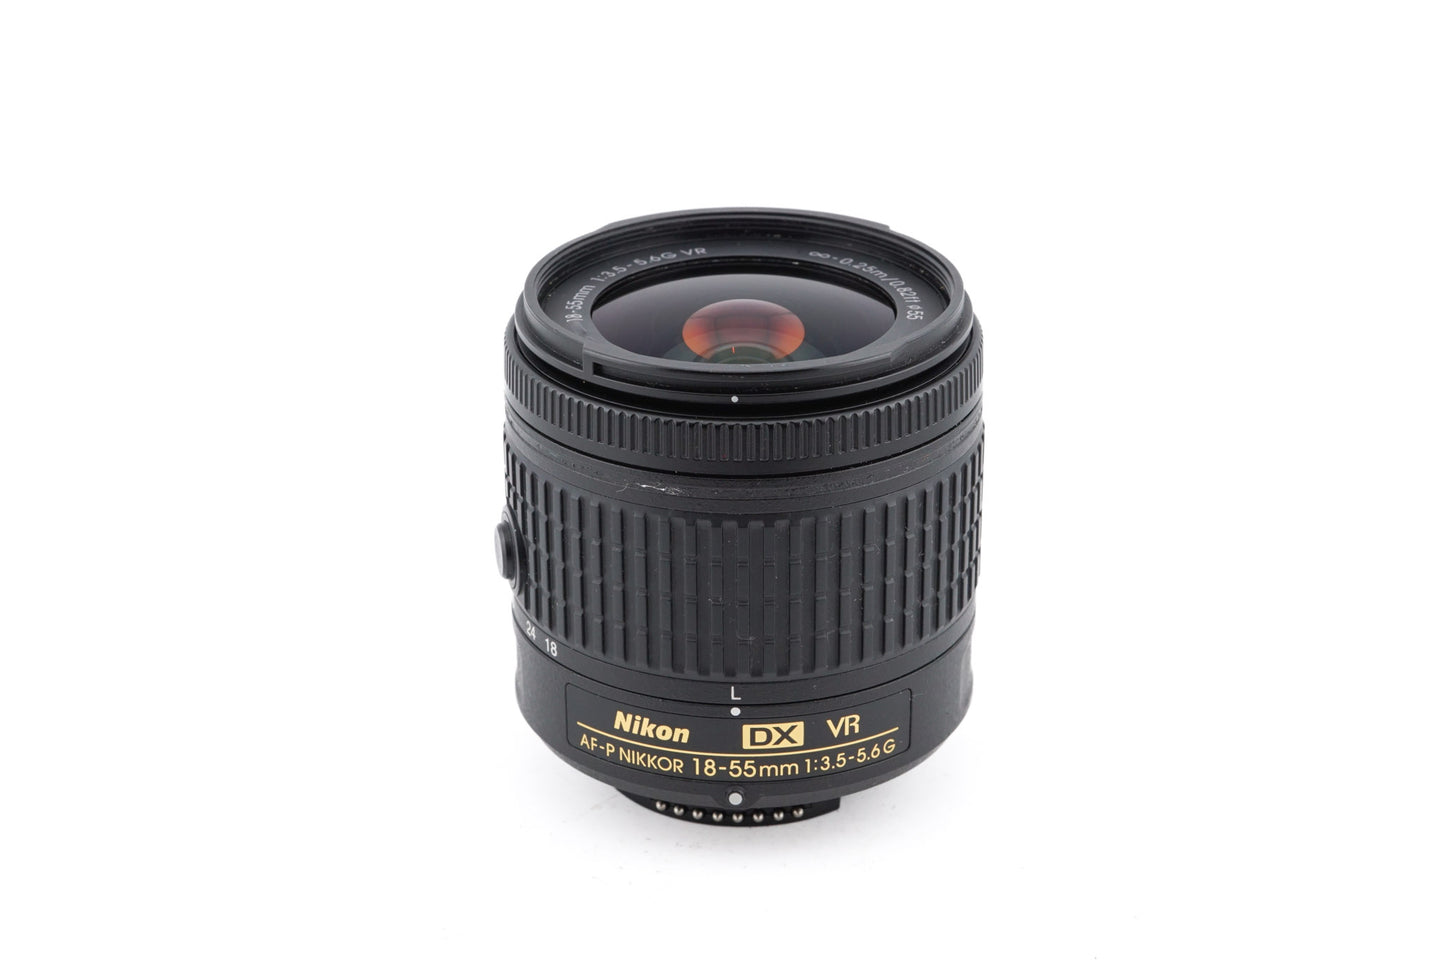 Nikon 18-55mm f3.5-5.6 G VR AF-P Nikkor - Lens